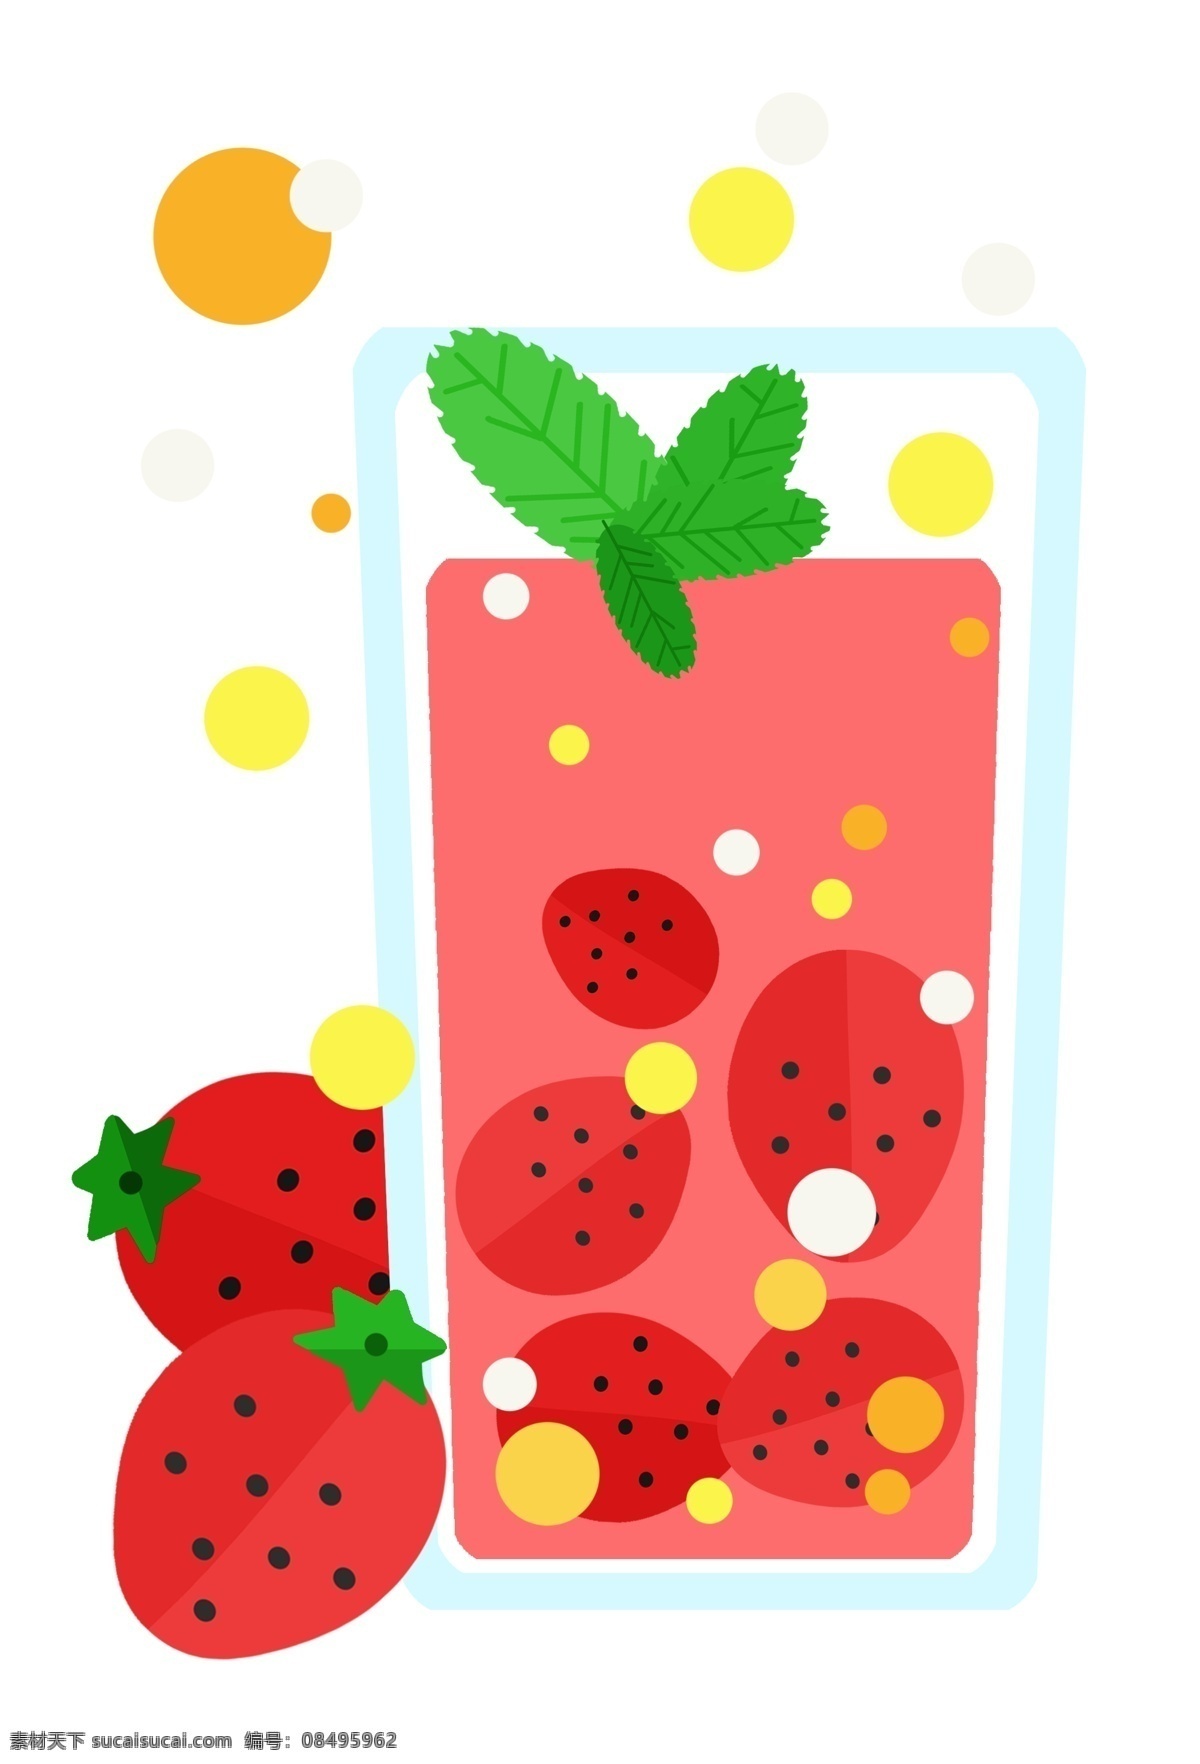 杯装草莓饮料 叶子 草莓 果汁